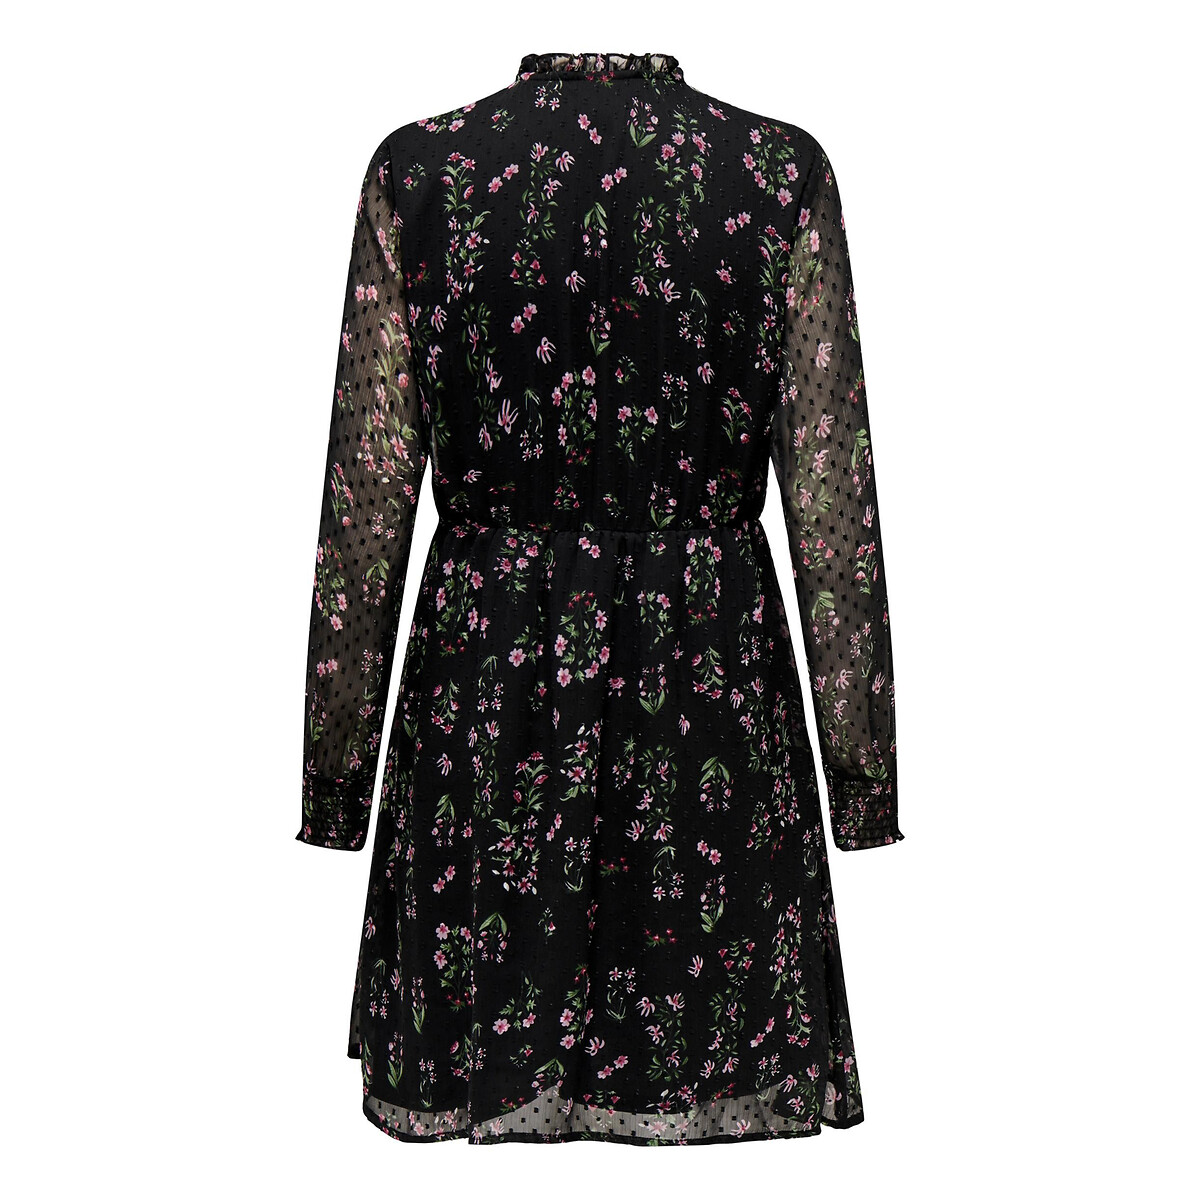 Платье Короткое расклешенное с цветочным принтом XXL черный LaRedoute, размер XXL - фото 2